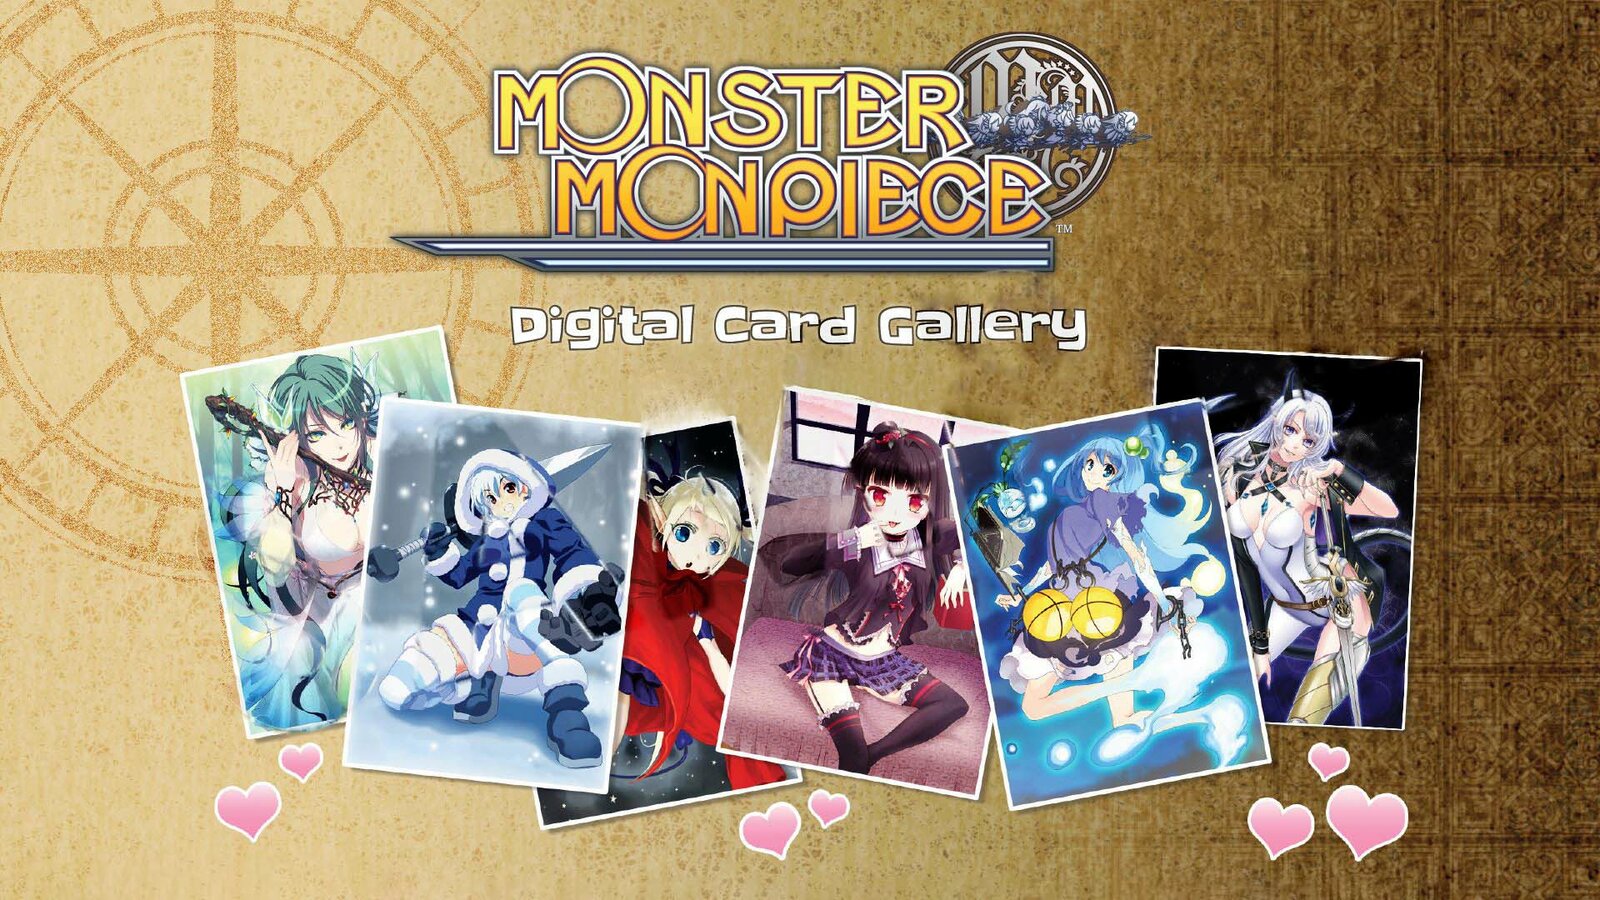 Monster Monpiece - Deluxe Pack